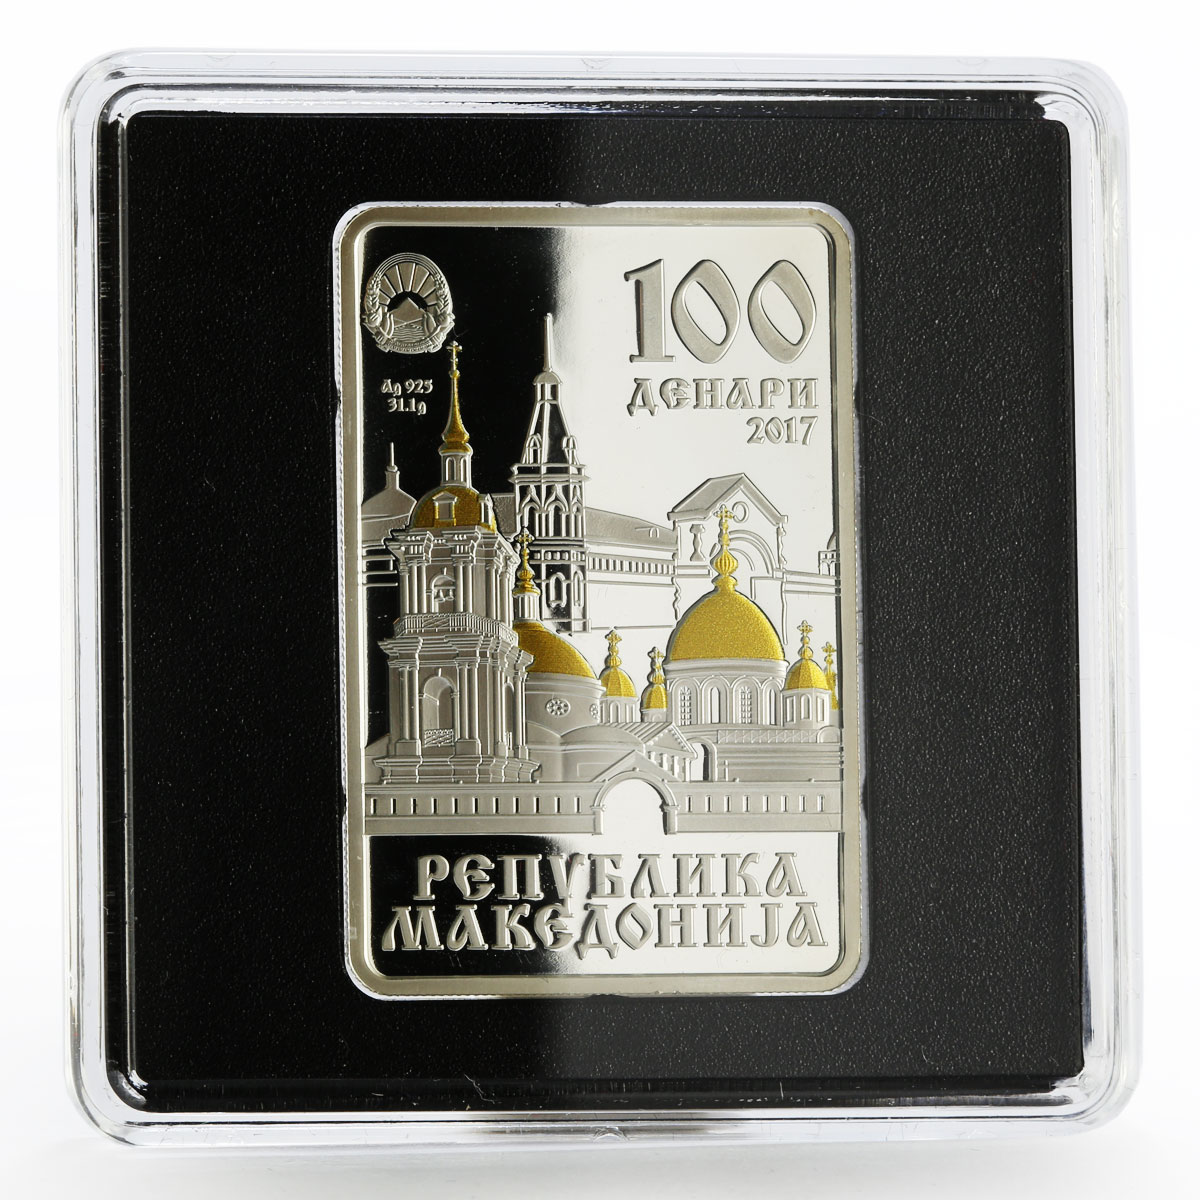 Macedonia 100 denars Saint Matrona of Moscow Icon gilded silver coin 2017